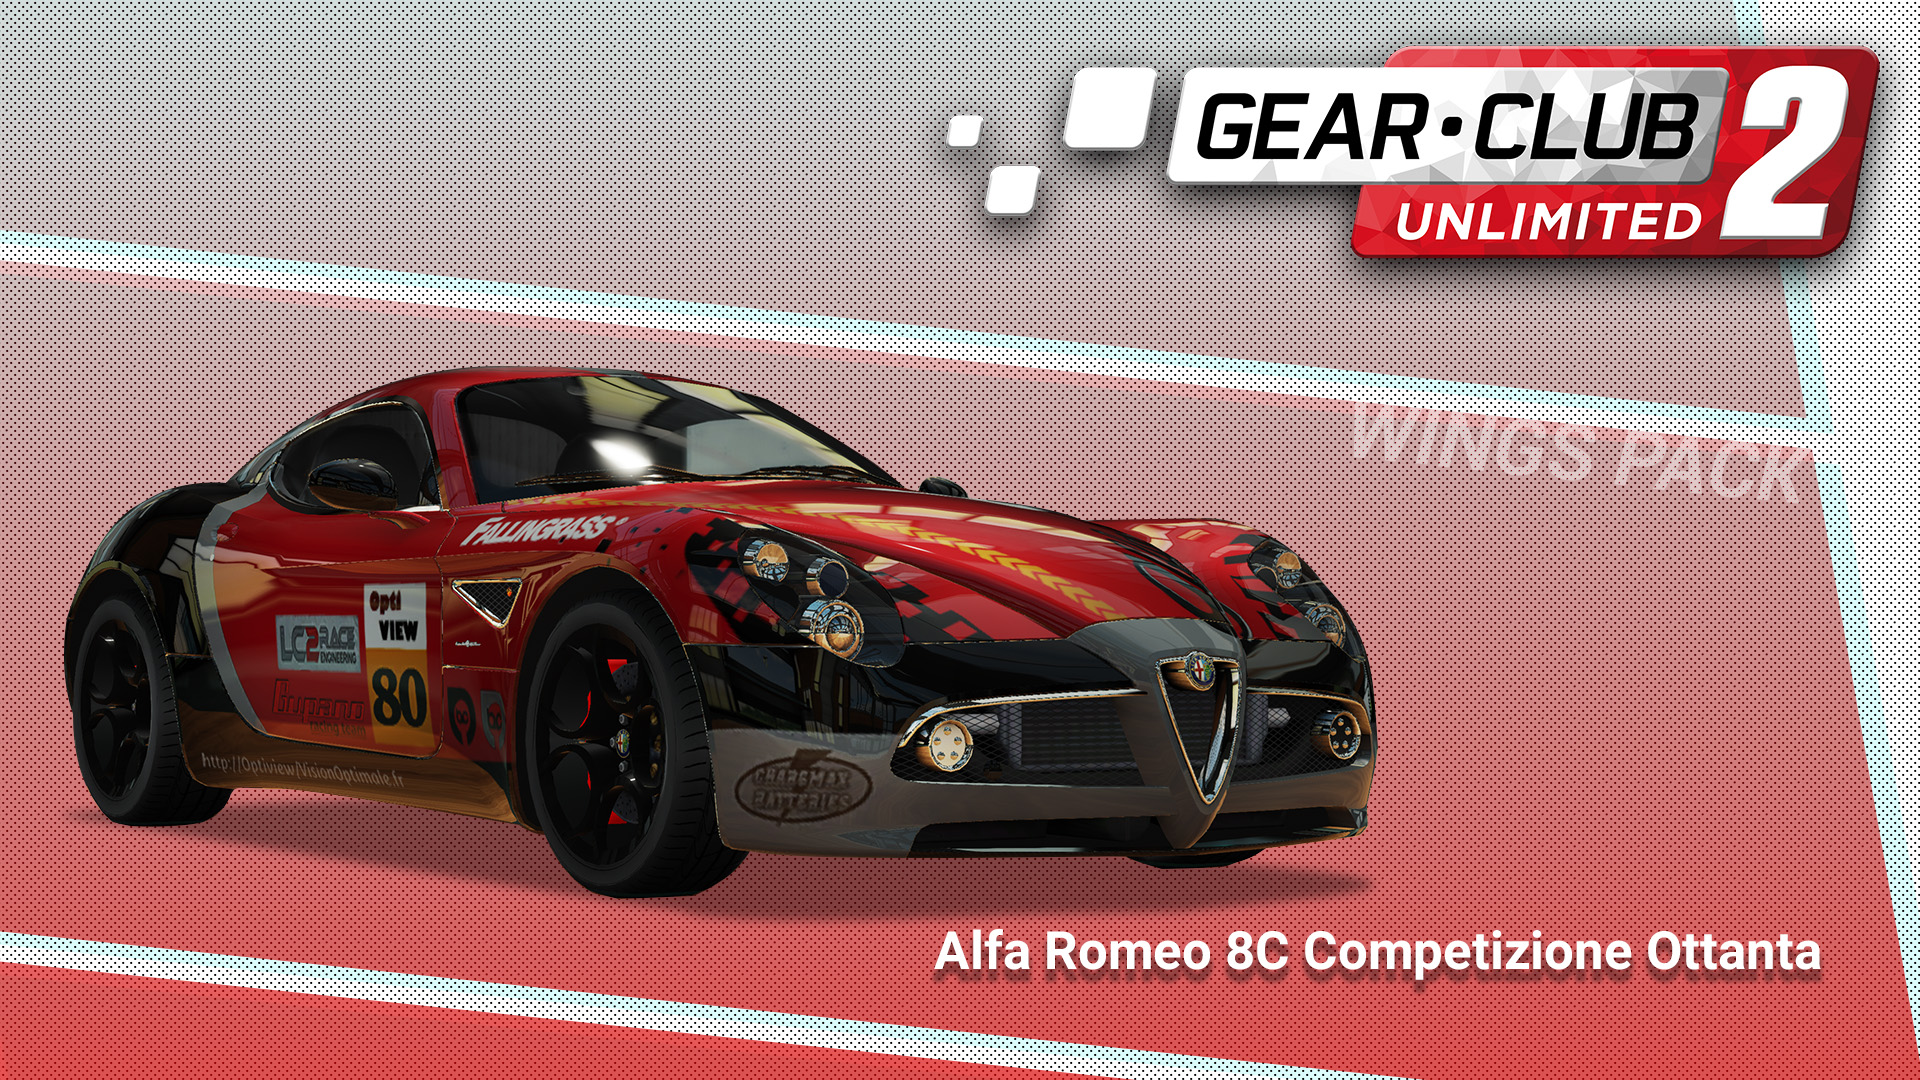 Alfa Romeo 8C Competizione Ottanta - Gear.Club Unlimited 2